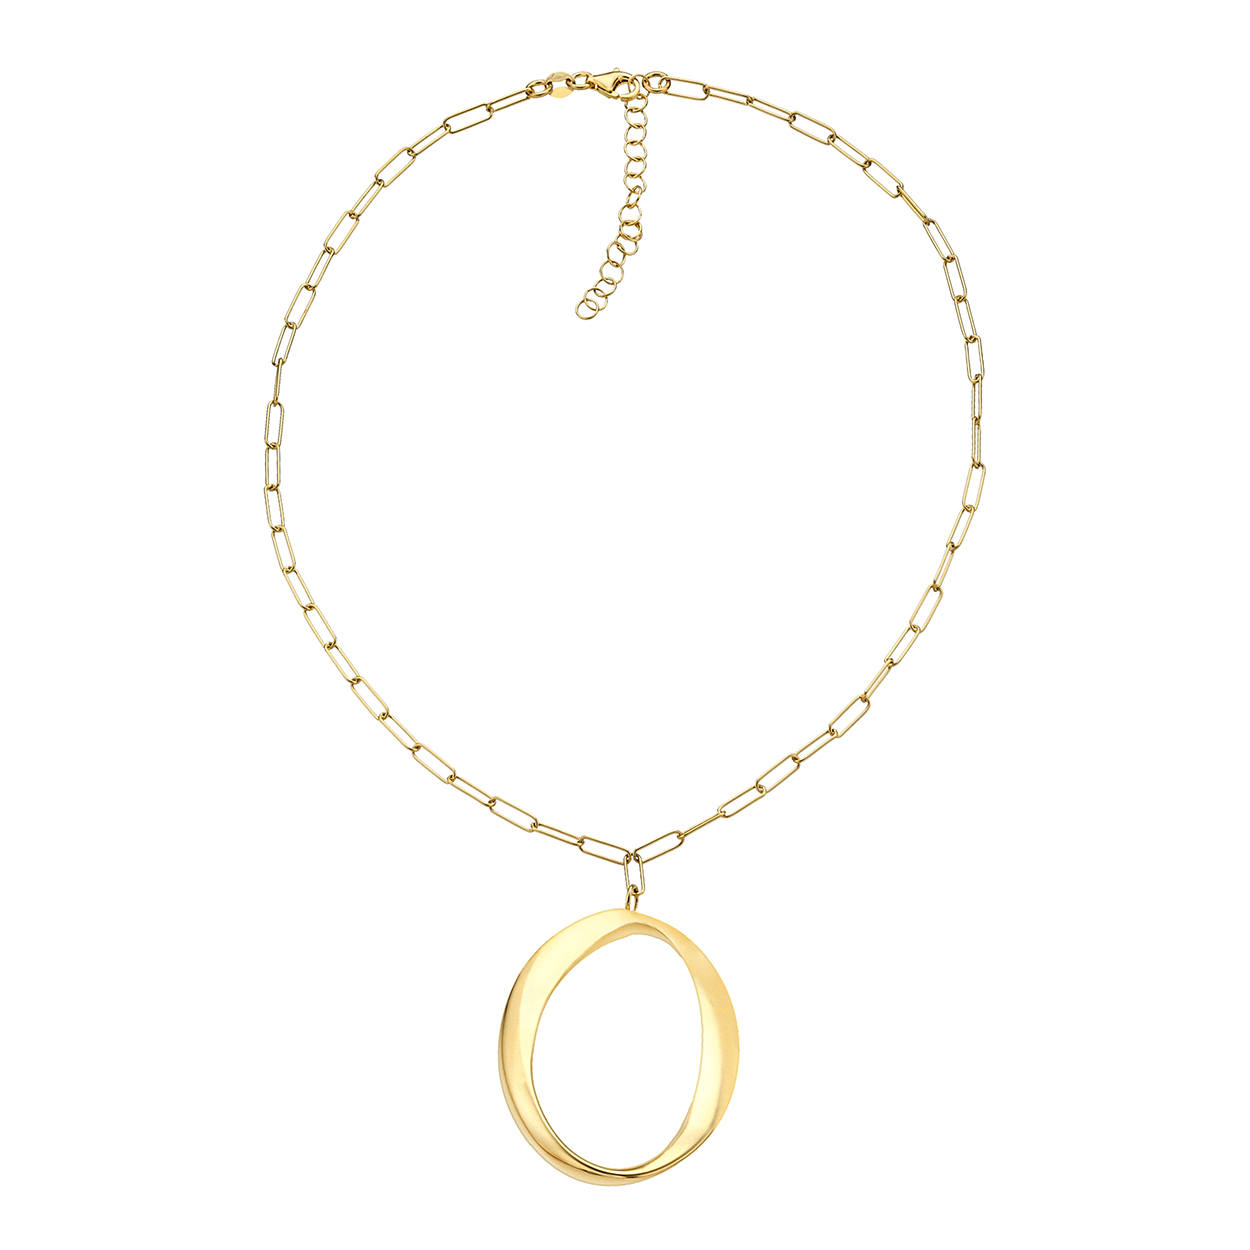 00511167-collar-plata-dorada-circulo-joyeria-acebo-duran-exquse